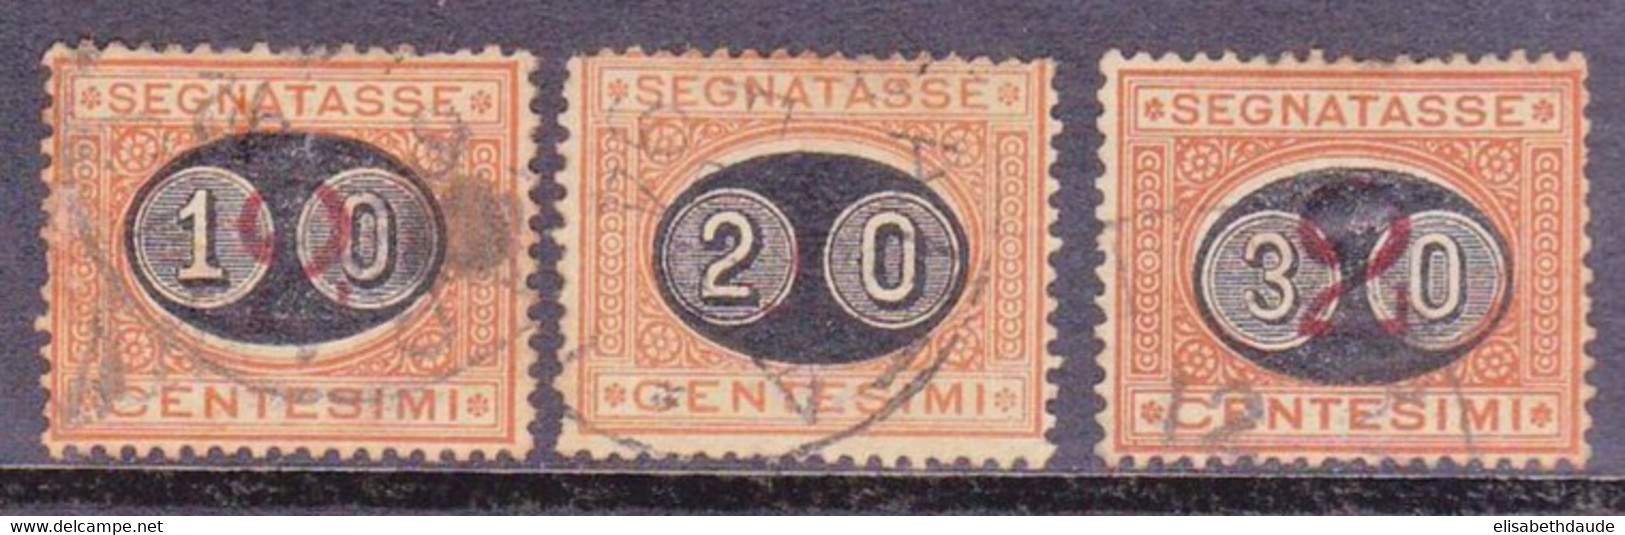 ITALIE - 1890 - YVERT N°22/24 OBLITERES - TAXE - COTE = 57 EUROS - Usati